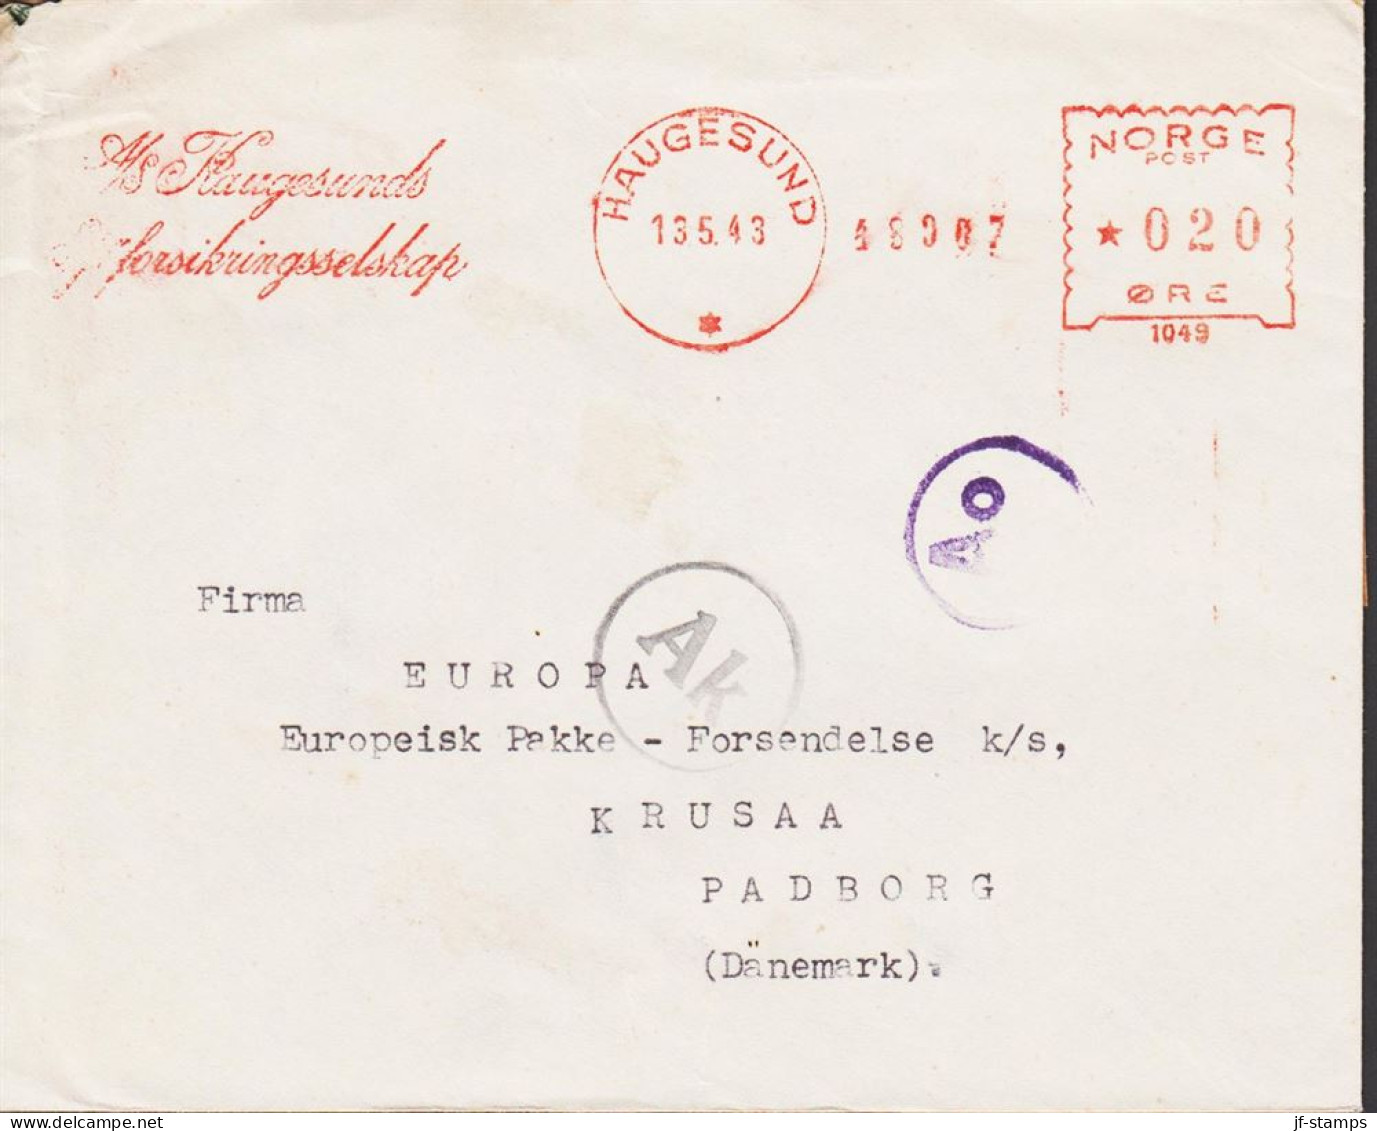 1943. NORGE. Very Interesting Cover To Firma EUROPA Europæisk Pakke Forsendelse, KRUSAA PADBORG DANMARK Ca... - JF545670 - Brieven En Documenten